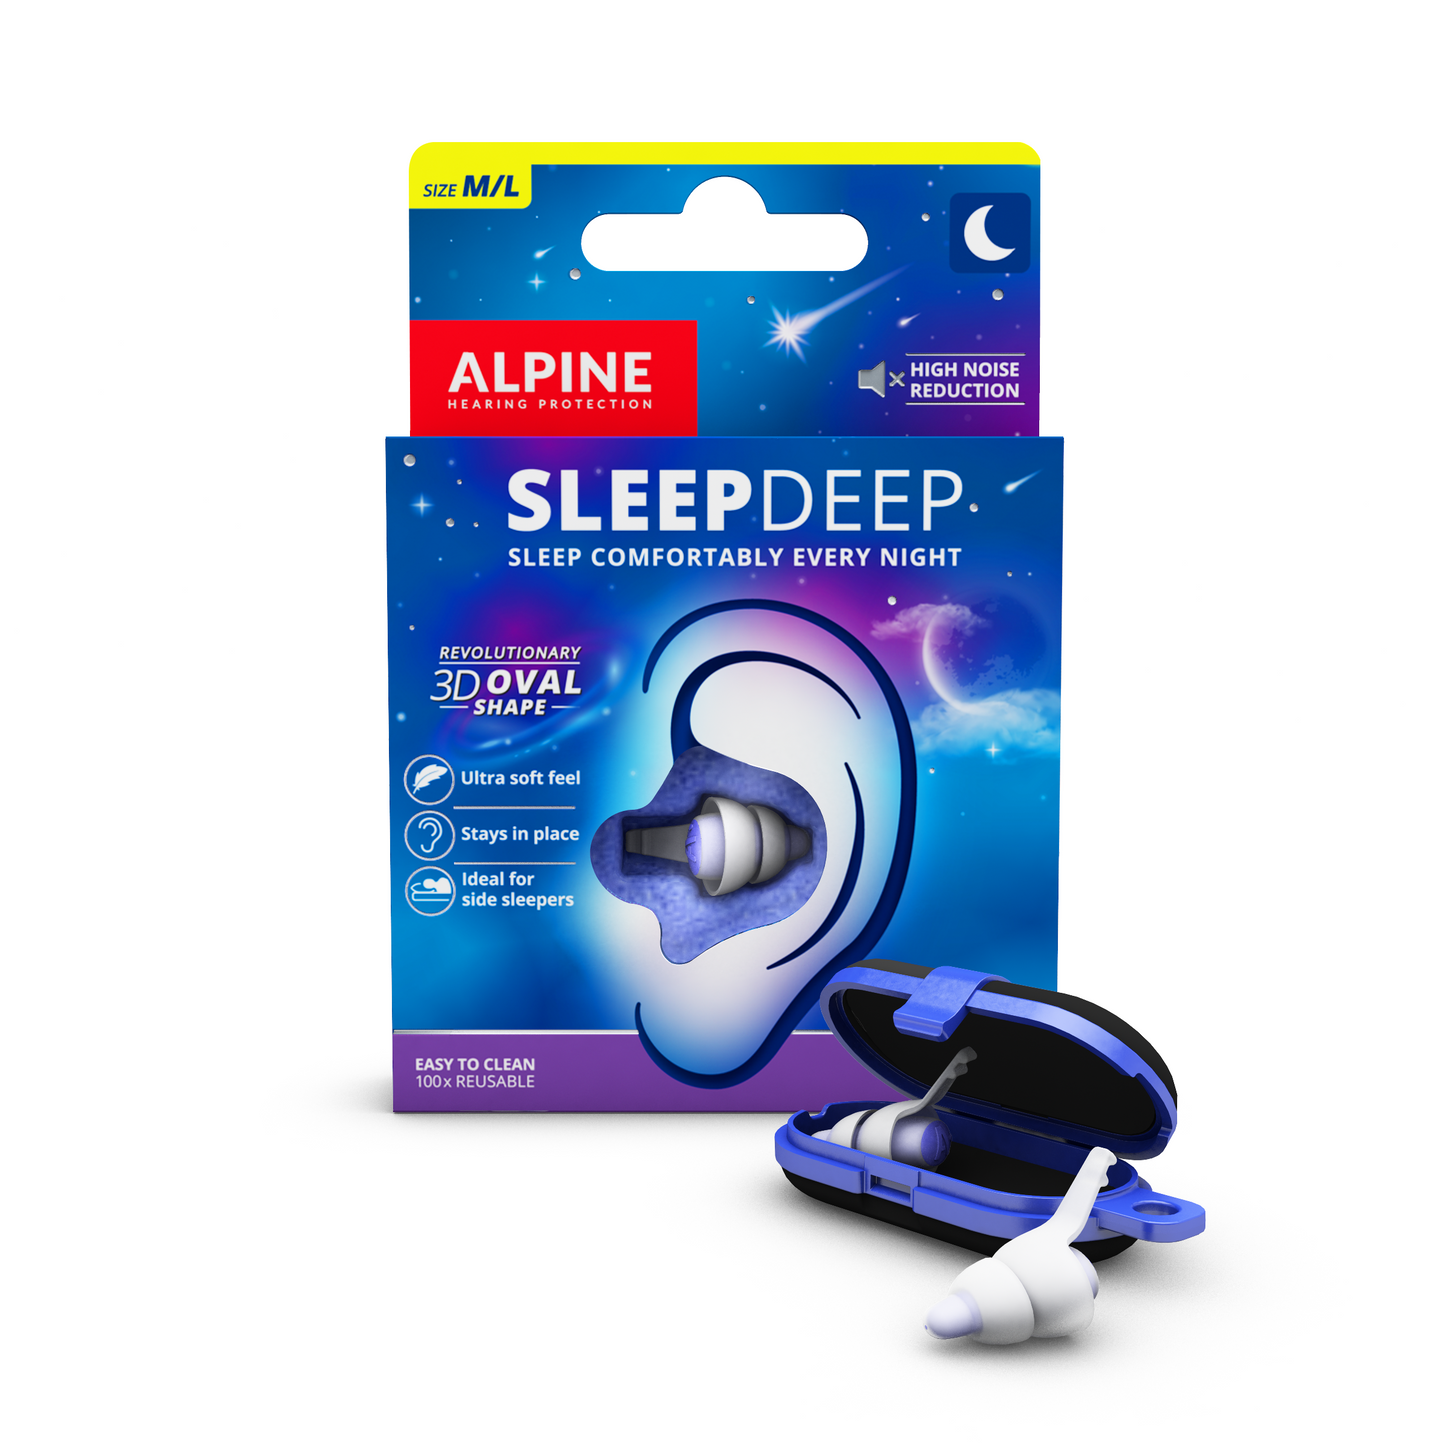 Alpine SleepDeep oordoppen voor tijdens het slapen